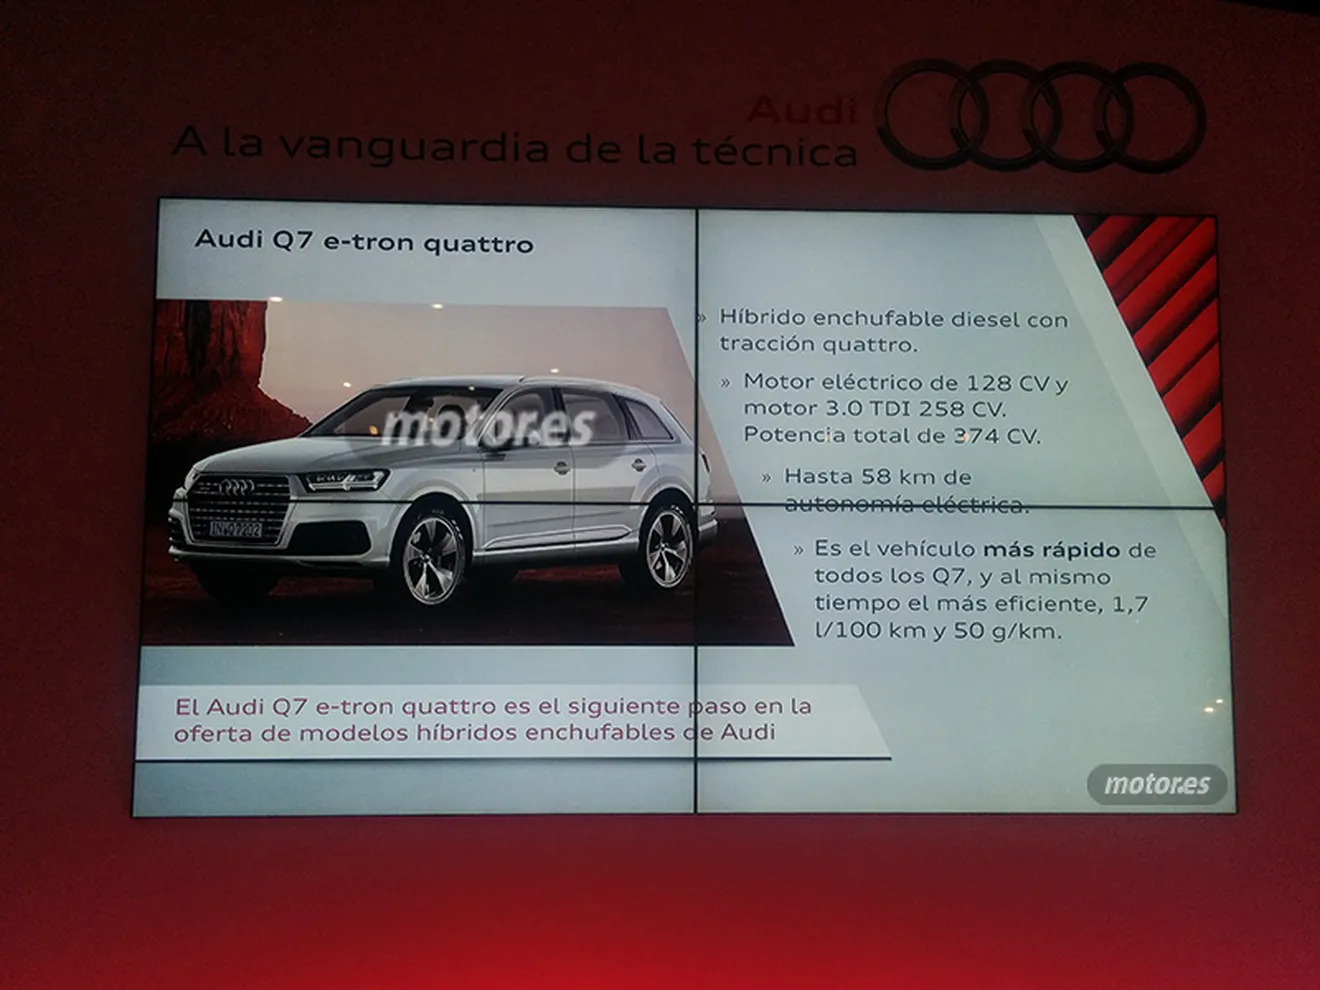 Audi Q7 e-tron quattro 2015, autonomía eléctrica de 58 kilómetros